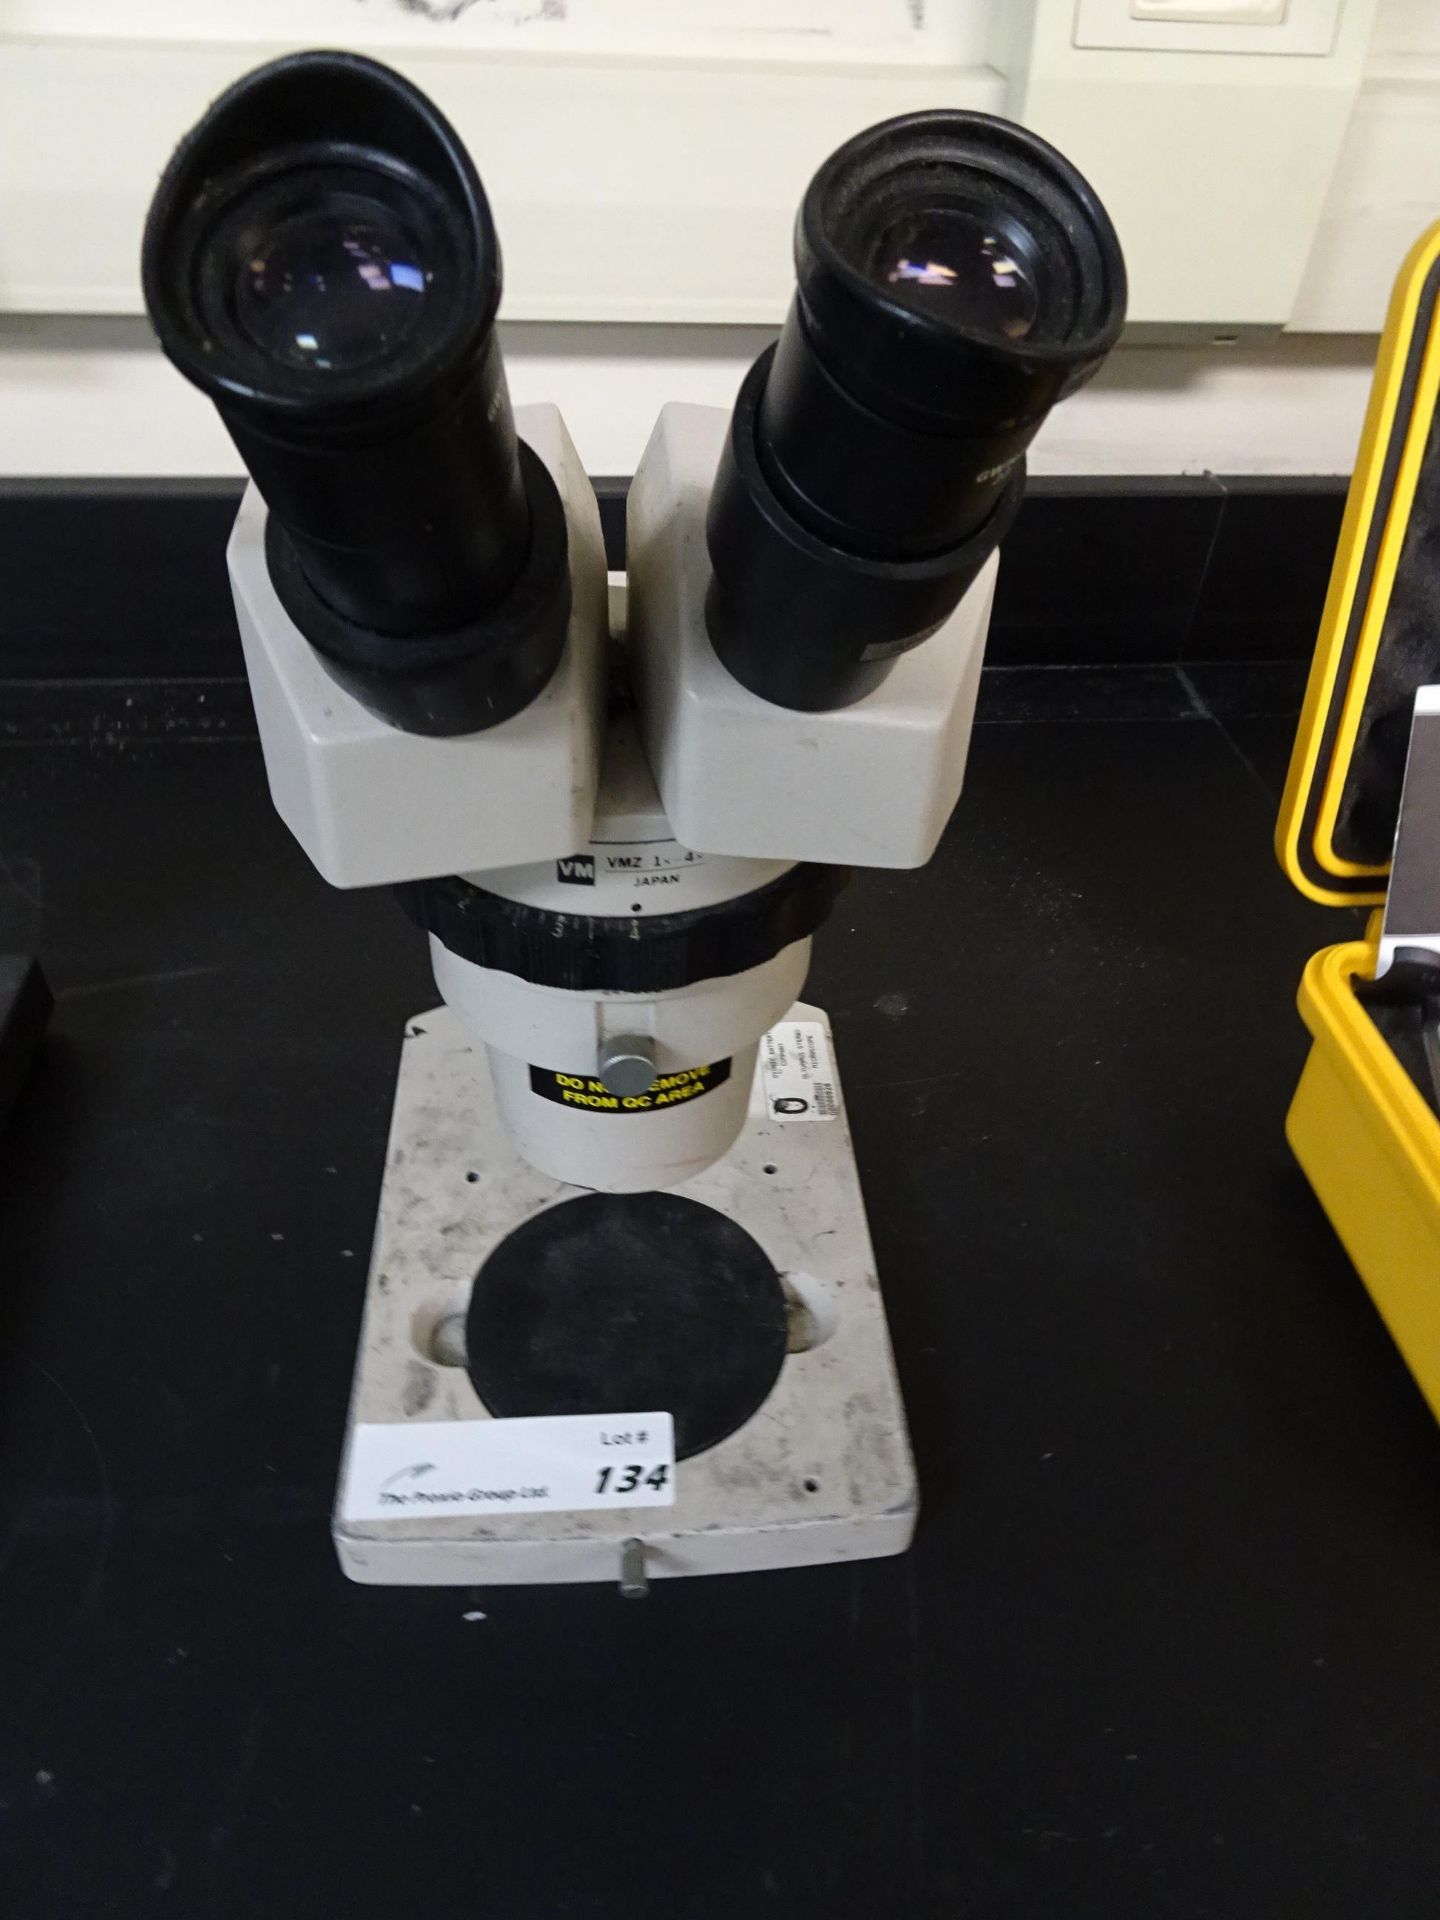 Olympus VMZ 1x-4x Stereo Microscope w/ (2) 10x Eyepieces